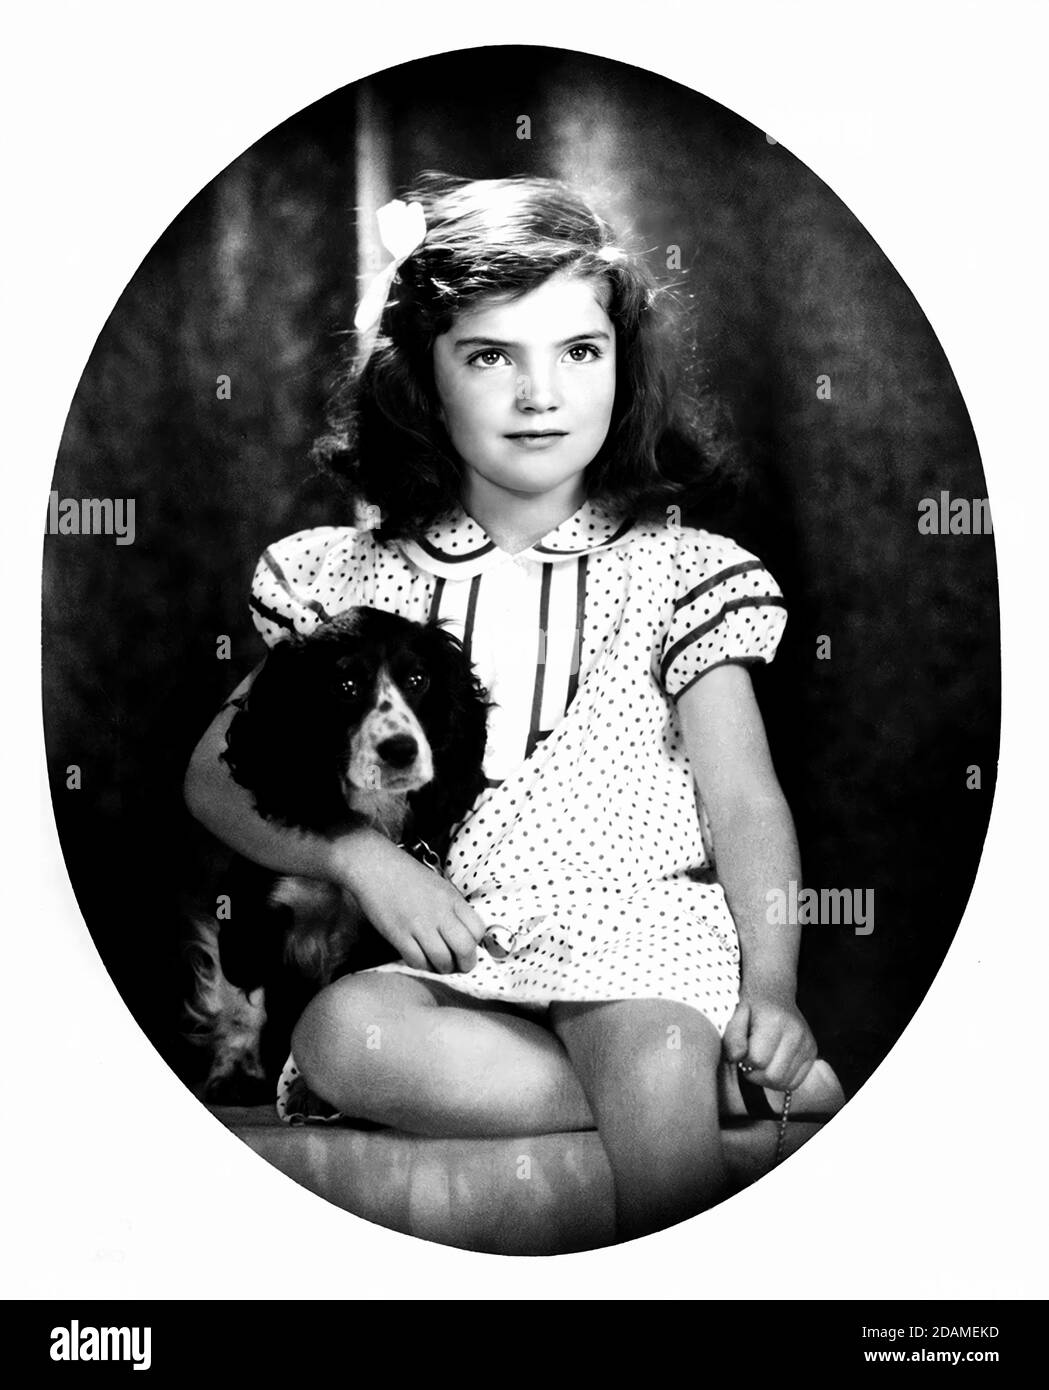 1935 , USA : JACQUELINE Lee BOUVIER ( JACKIE O , 1929 - 1994 ), als war ein kleines reiches Mädchen im Alter von 6 . Später verheiratet mit dem Präsidenten der Vereinigten Staaten John Fitzgerald KENNEDY (1917 - 1963) im Jahr 1961 und im Jahr 1968 mit reichen Aristotele ONASSIS ( 1906 - 1975). Foto von David Berne . - JFK - J.F.K. - FIRST LADY - Presidente degli Stati Uniti d'America - KIND - KINDER - KINDHEIT - INFANZIA - bambino - Bambina - Bambini - Persönlichkeiten Persönlichkeit als jung war - personalità da giovani giovane - Hund - Cocker - Stock - Haustier - animale domestico --- ARCHIVIO GBB Stockfoto